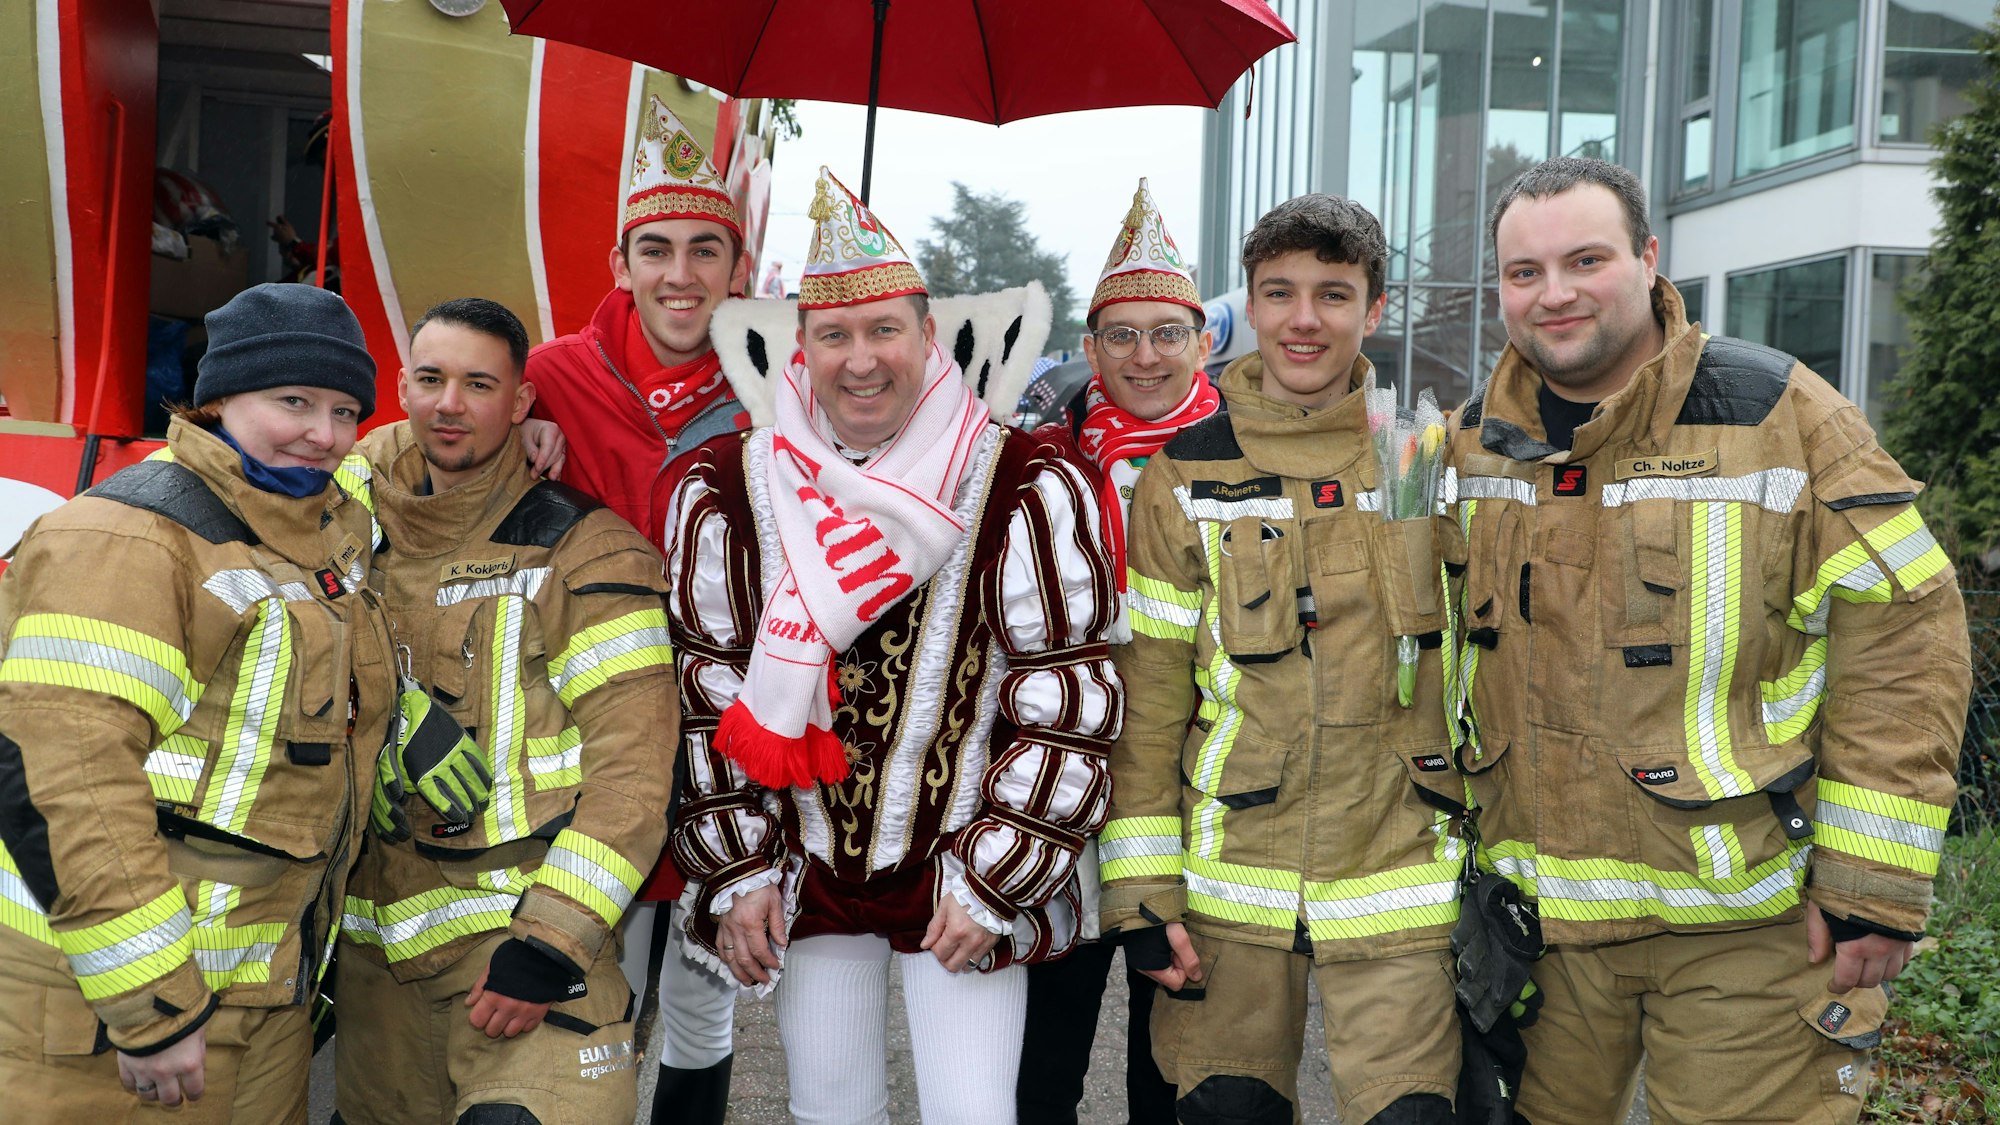 Feuerwehrleute vom Löschzug Bensberg stehen neben dem Karnevalsprinzen Frank III. (Haag), der von einem Schirm gegen den Nieselregen geschützt wird.